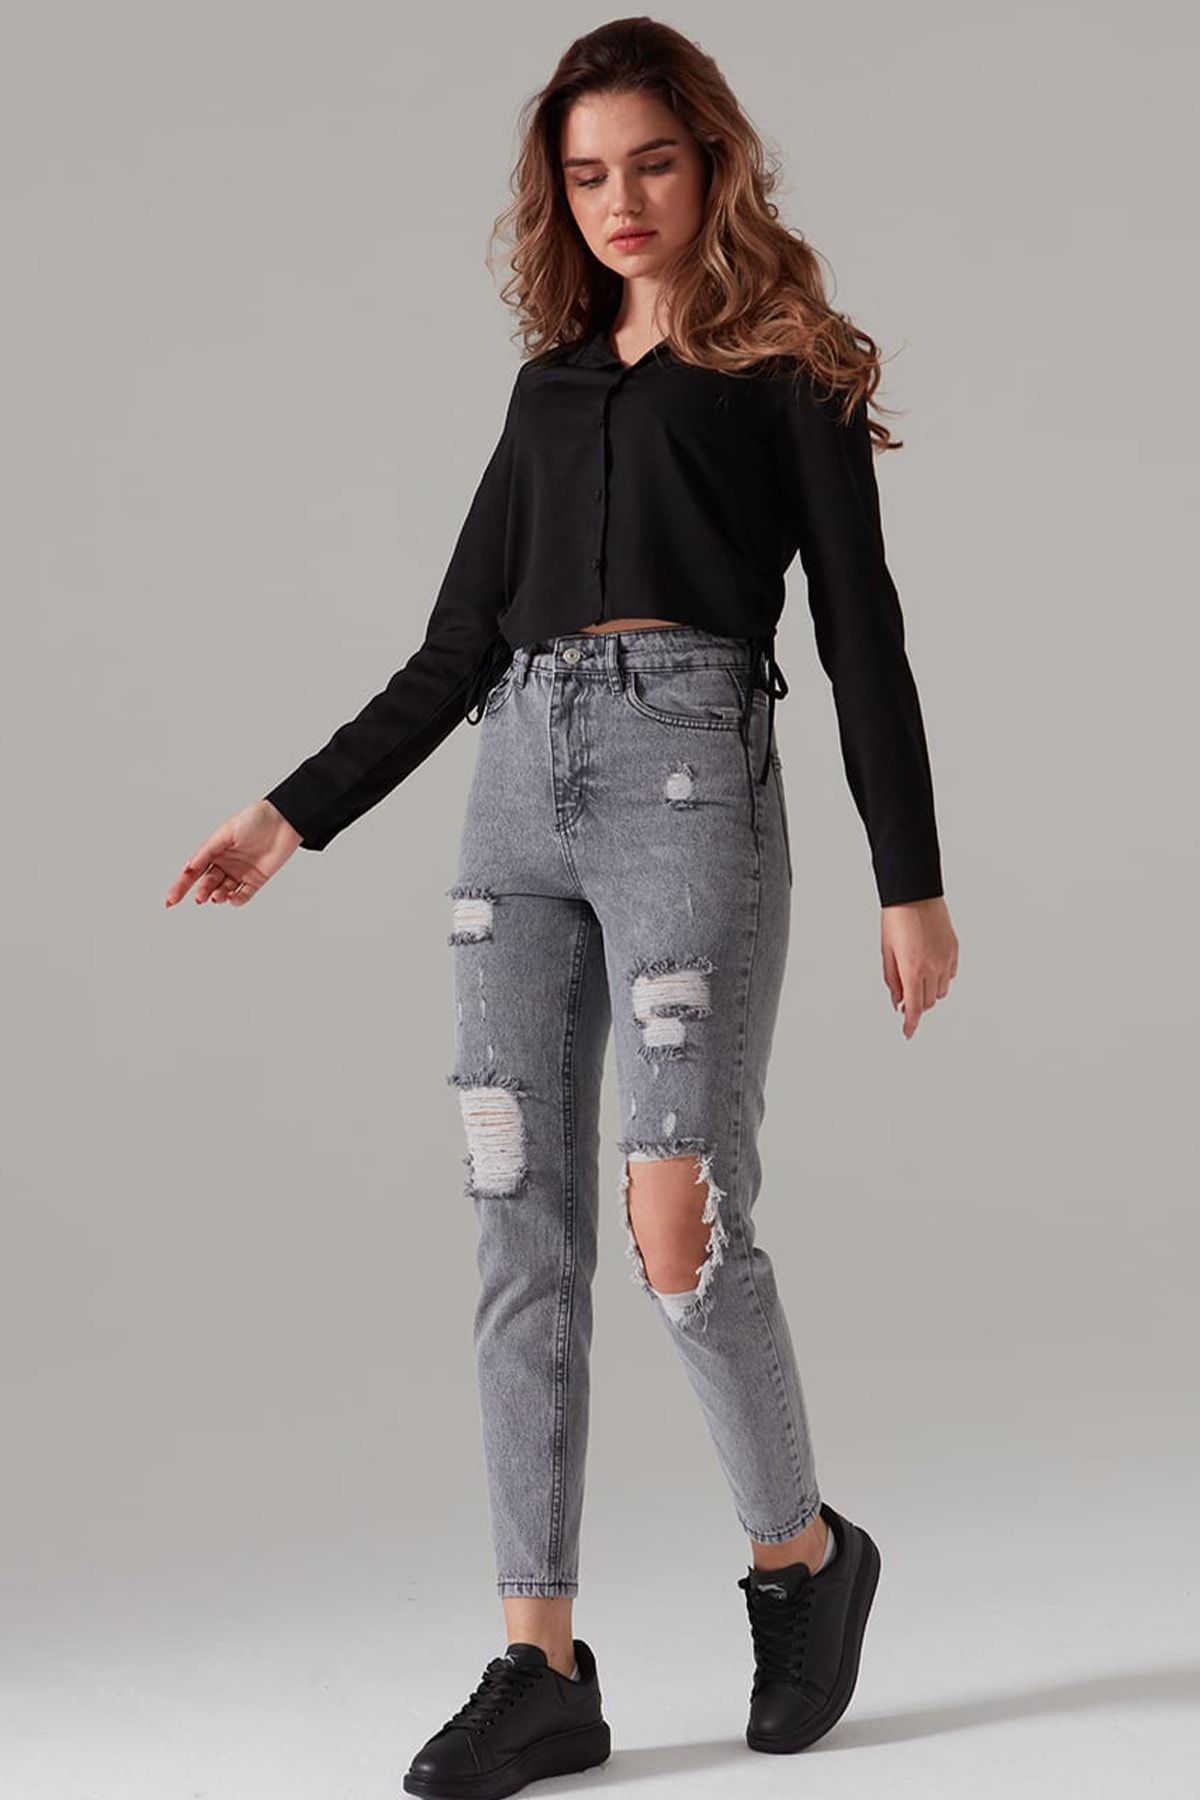 fehika Kadın Gri Kar Yıkama Yüksek Bel Pantolon Yırtık Mom Fit Jeans